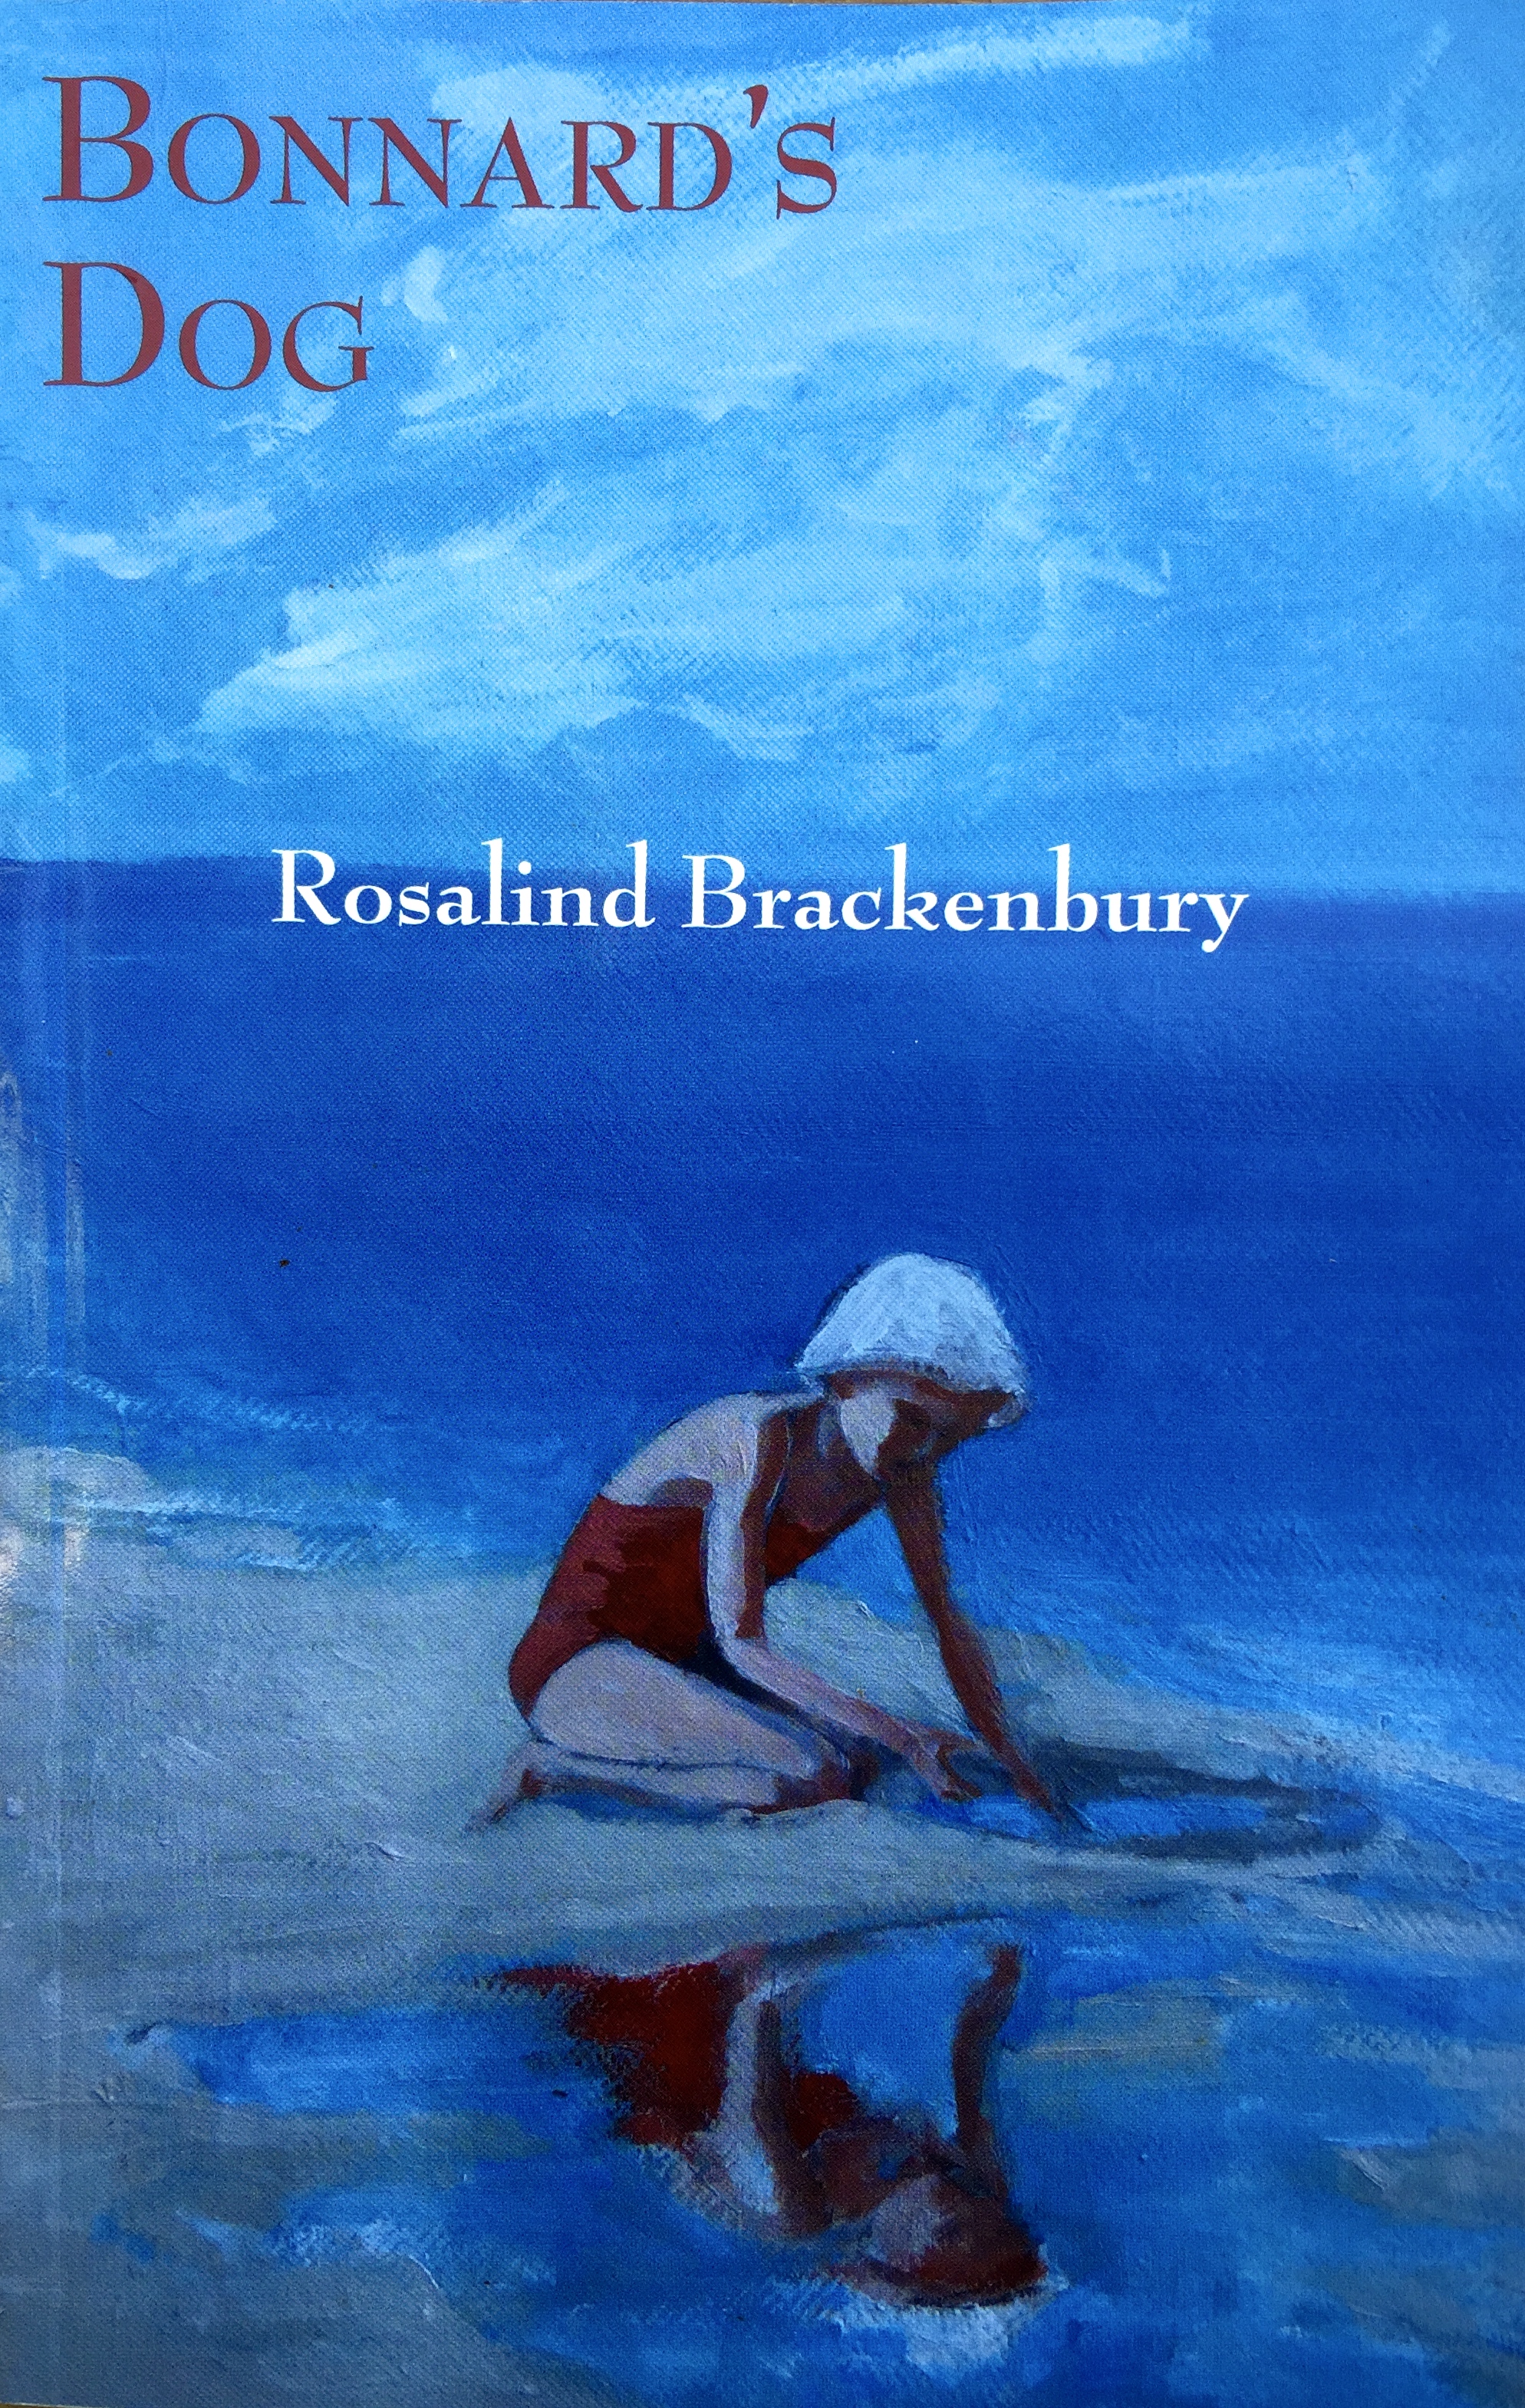 Review of Key West Poet Laureate, Rosalind Brackenbury’s, “Bonnard’s Dog”